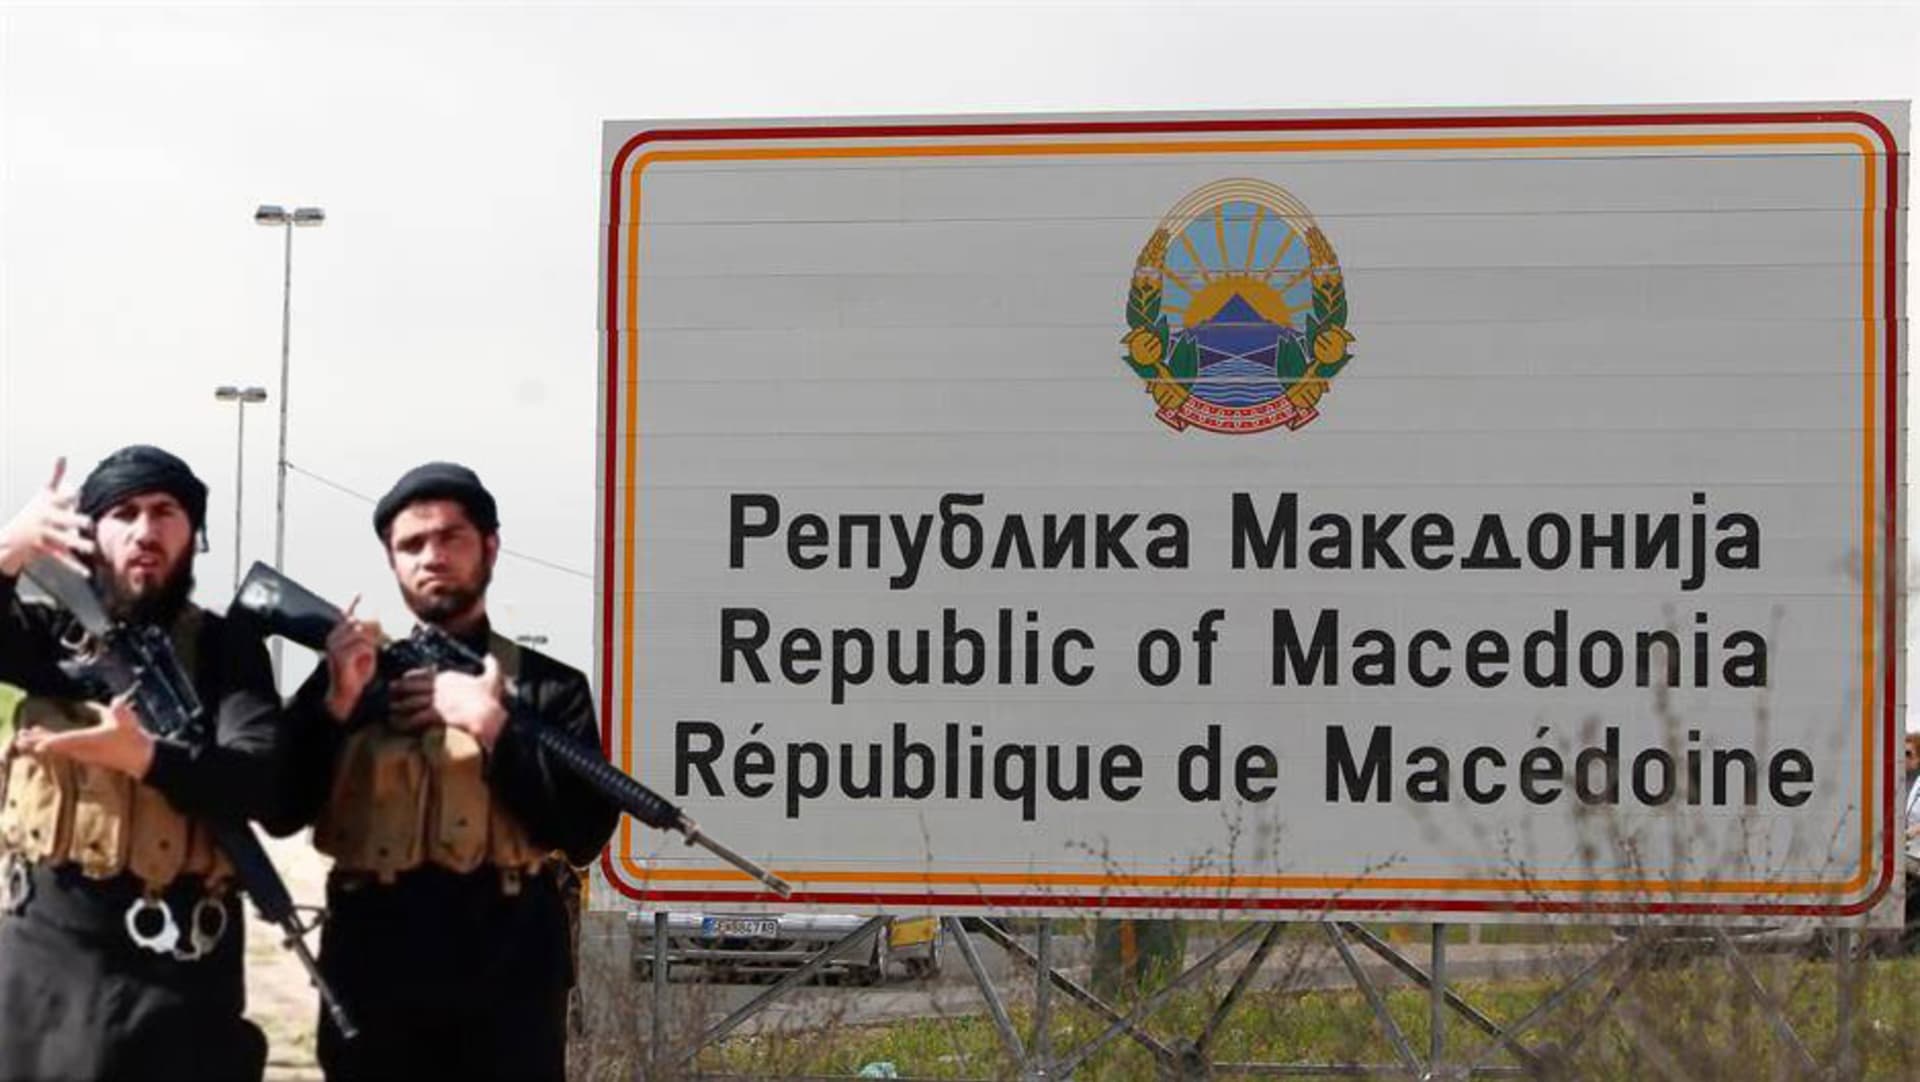 bojovníci-ISIS-v-ještě-u-starého-označení-Makedonie-foto-youtube,--koláž